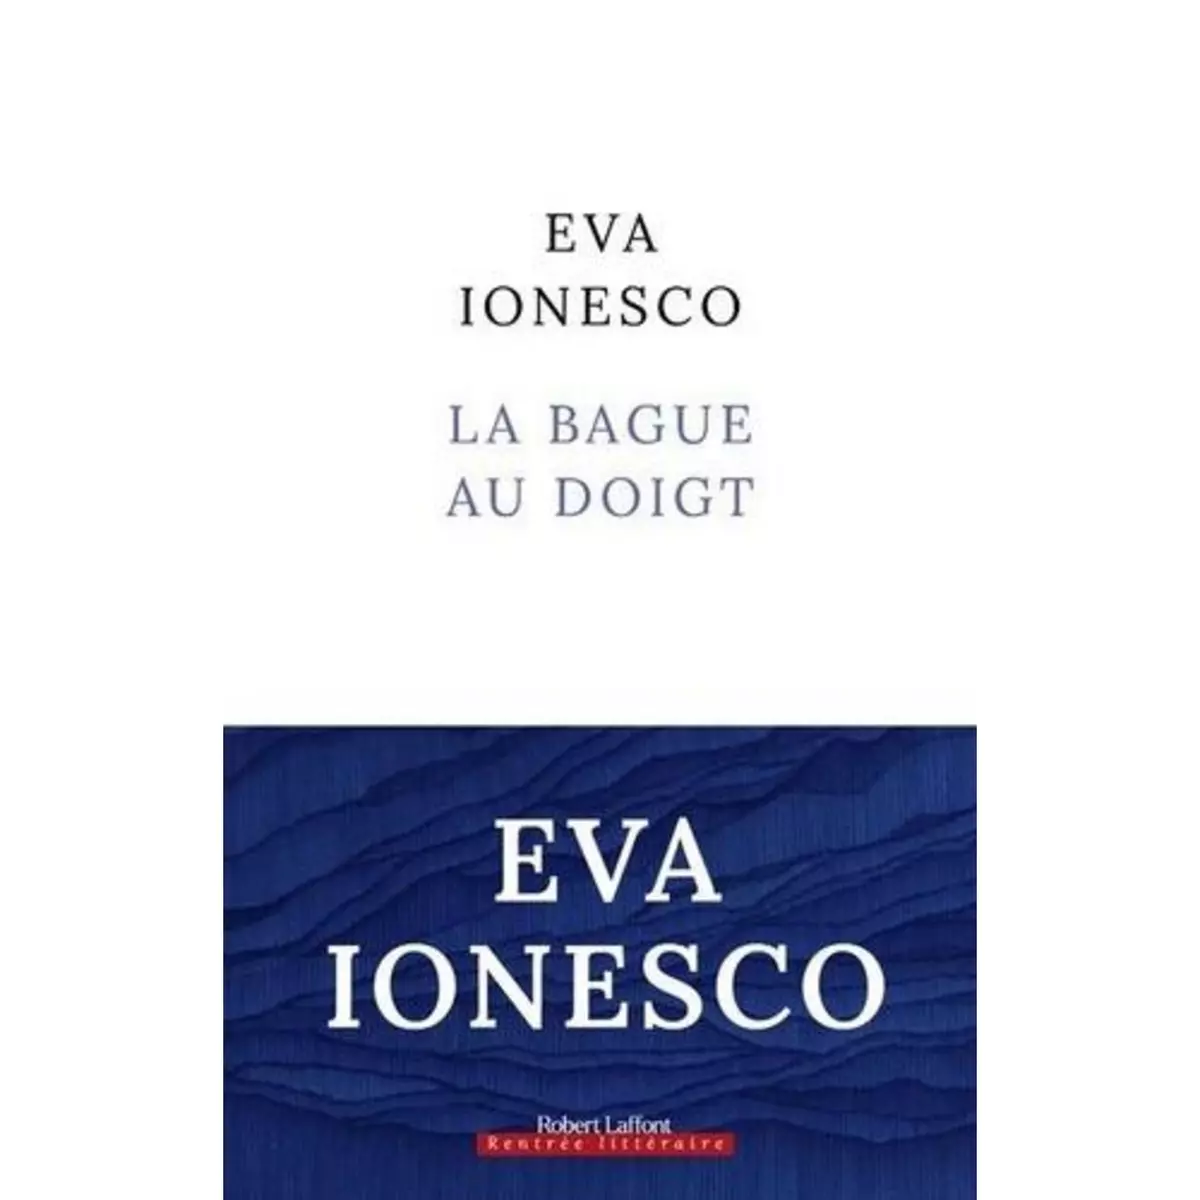  LA BAGUE AU DOIGT, Ionesco Eva